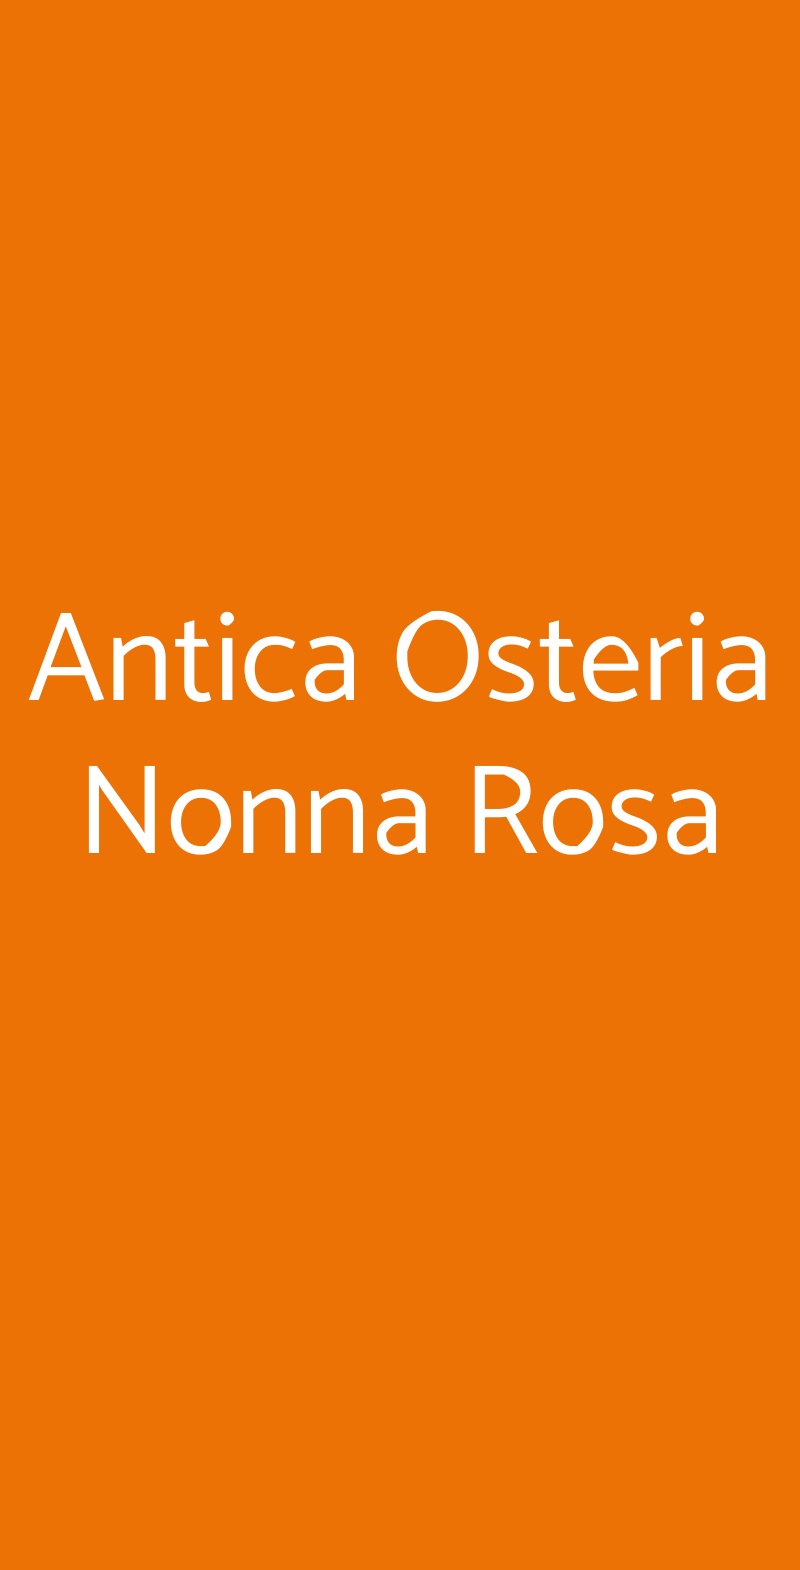 Antica Osteria Nonna Rosa Vico Equense menù 1 pagina